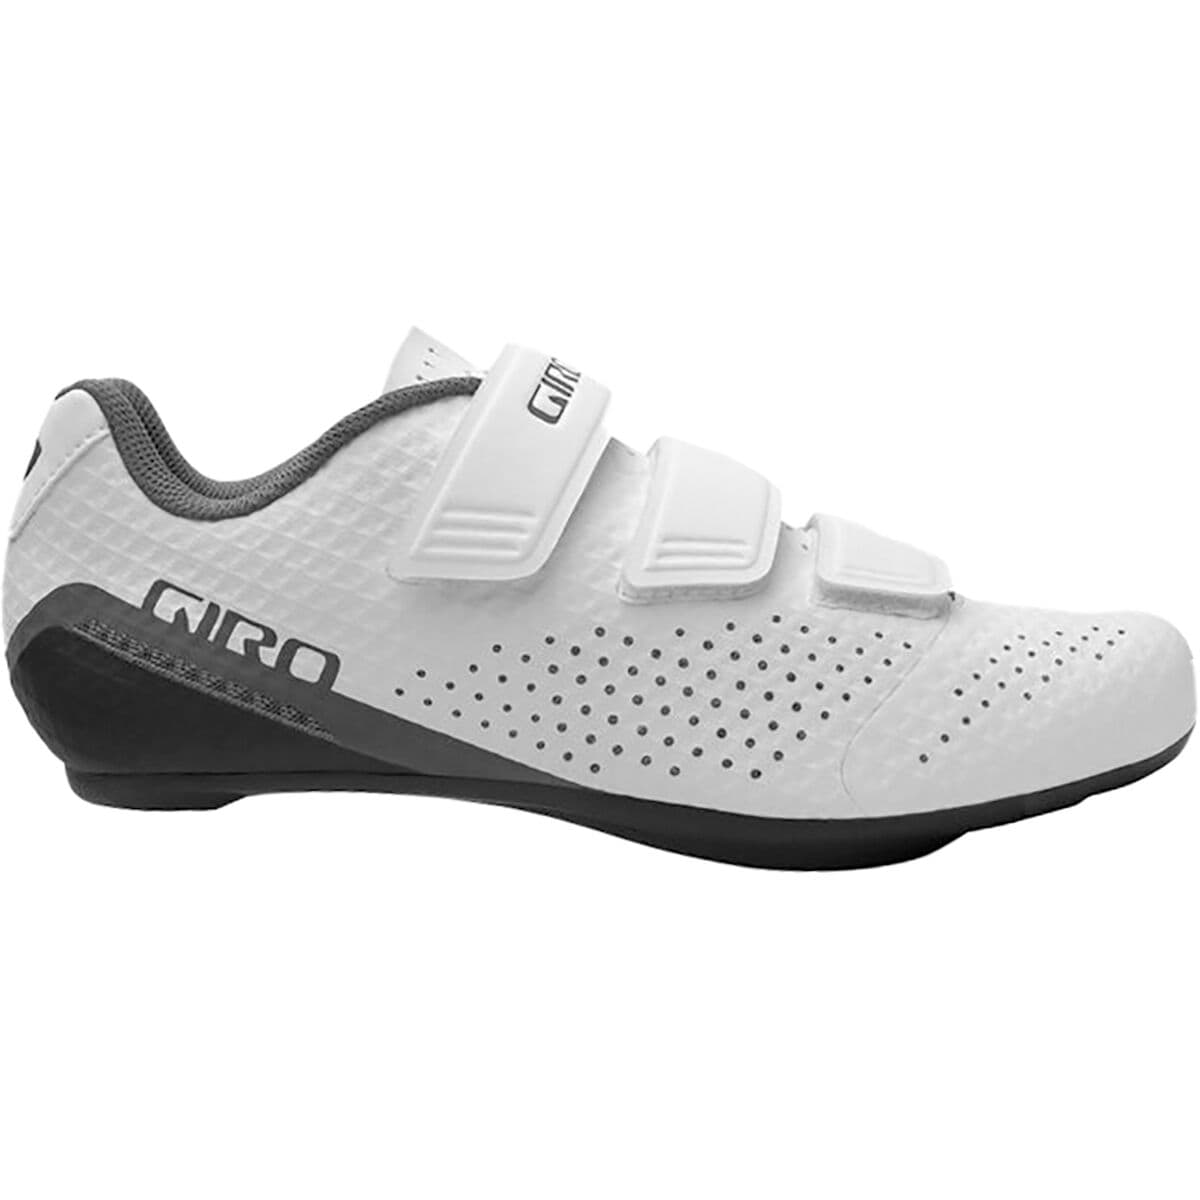 Giro Stylus Cycling Shoe - Women's White, 41.0